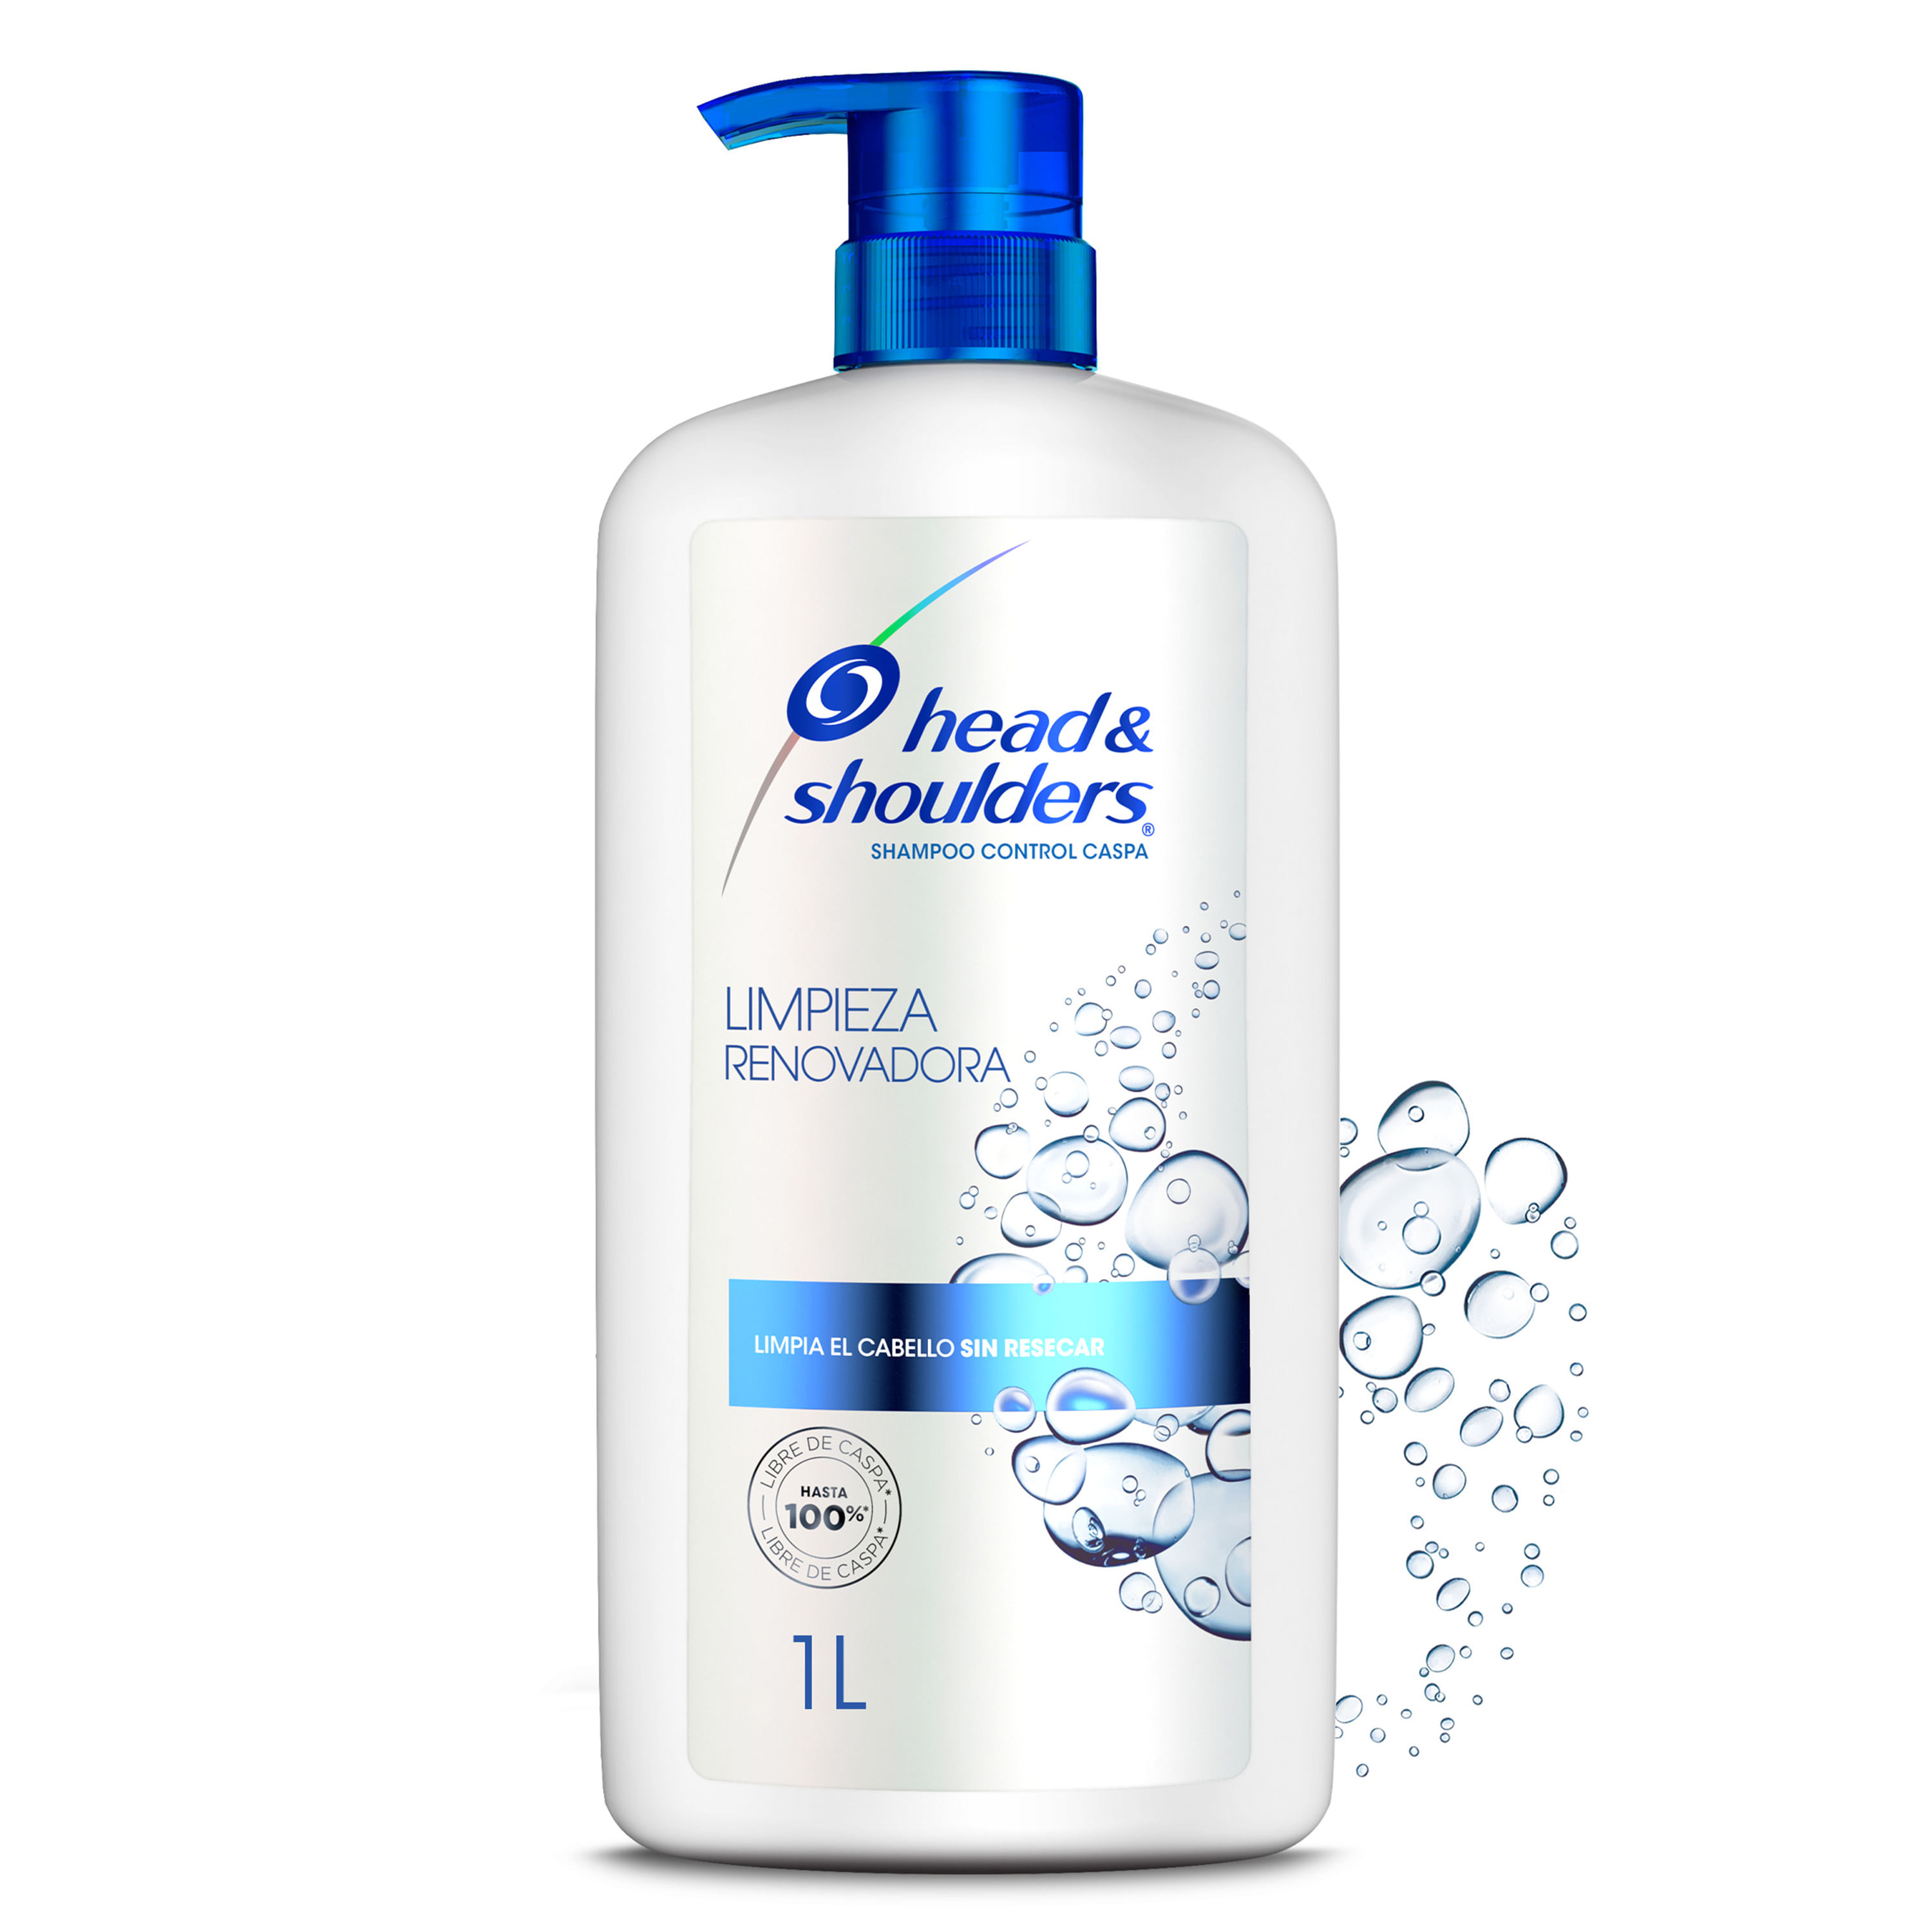 Shampoo-Control-Caspa-Head-Shoulders-Limpieza-Renovadora-1-L-1-35471